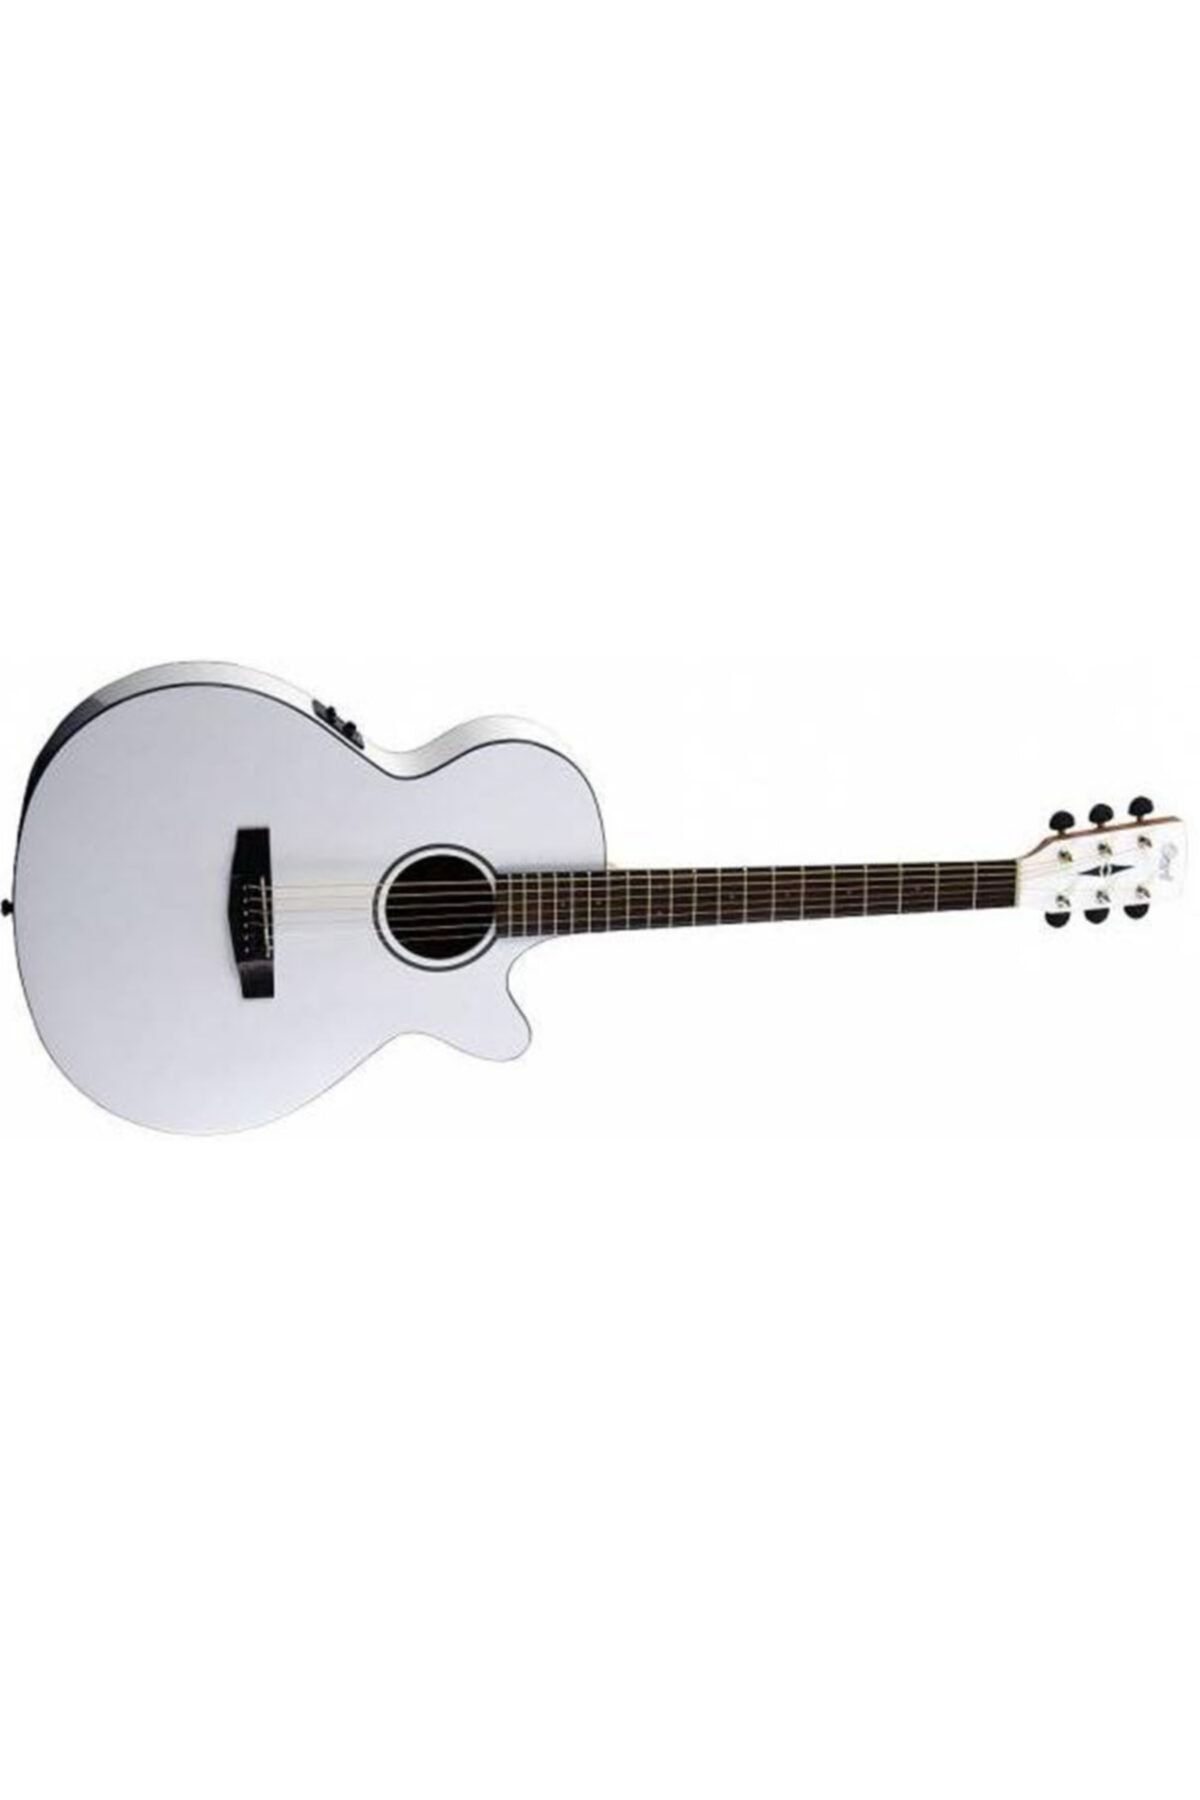 CORT Sfx1faw Elektro Akustik Cutaway Gitar, Kutup Beyazı, Fish